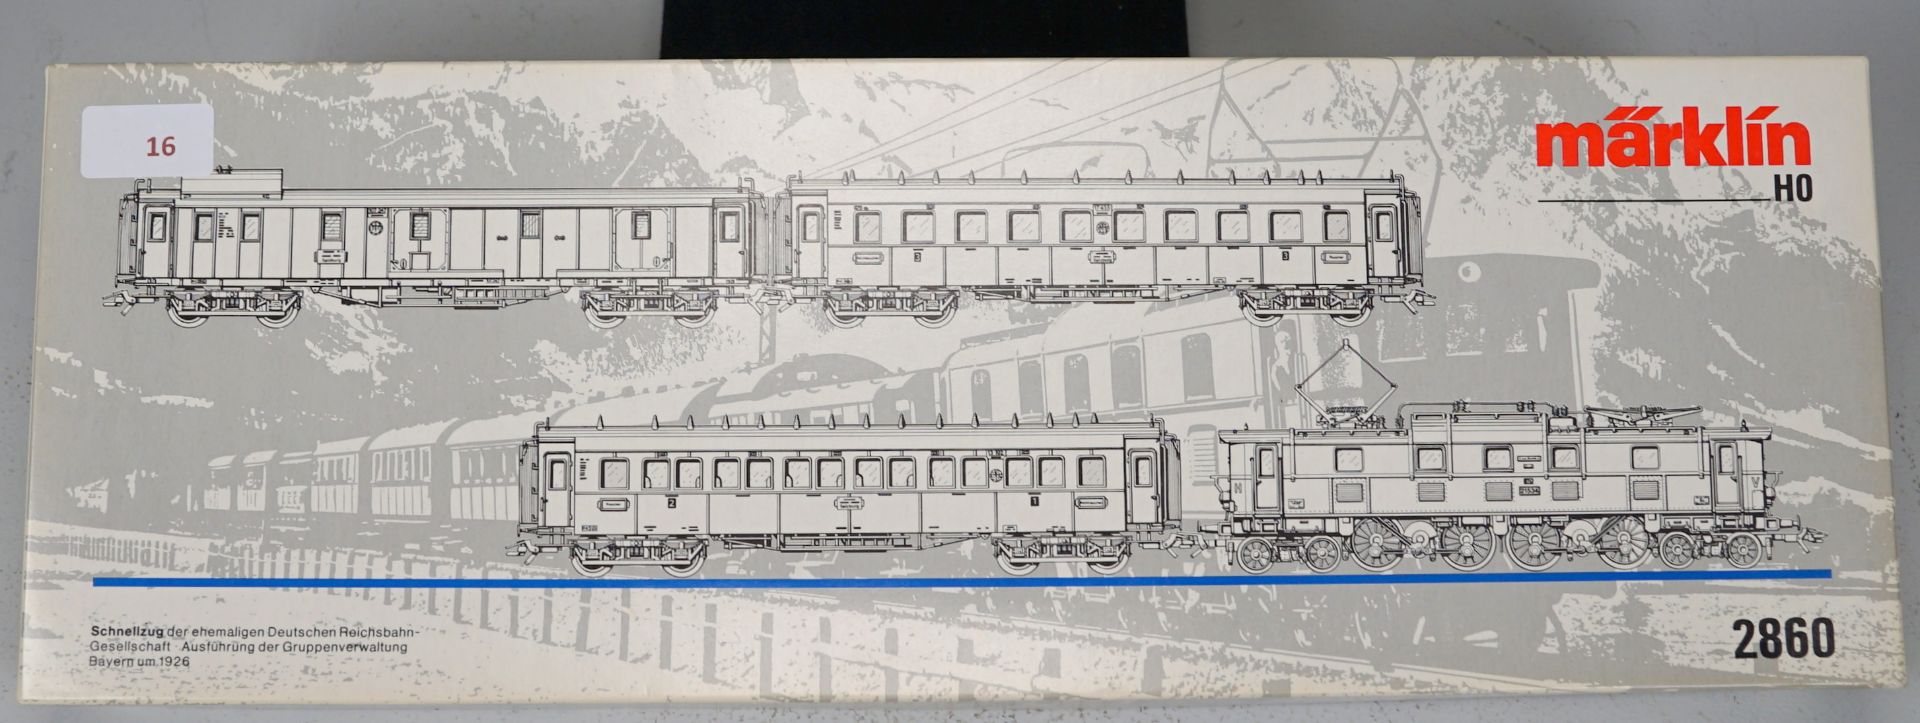 Schnellzugset Bayern 1926 Modell 2860 Märklin - Bild 2 aus 2